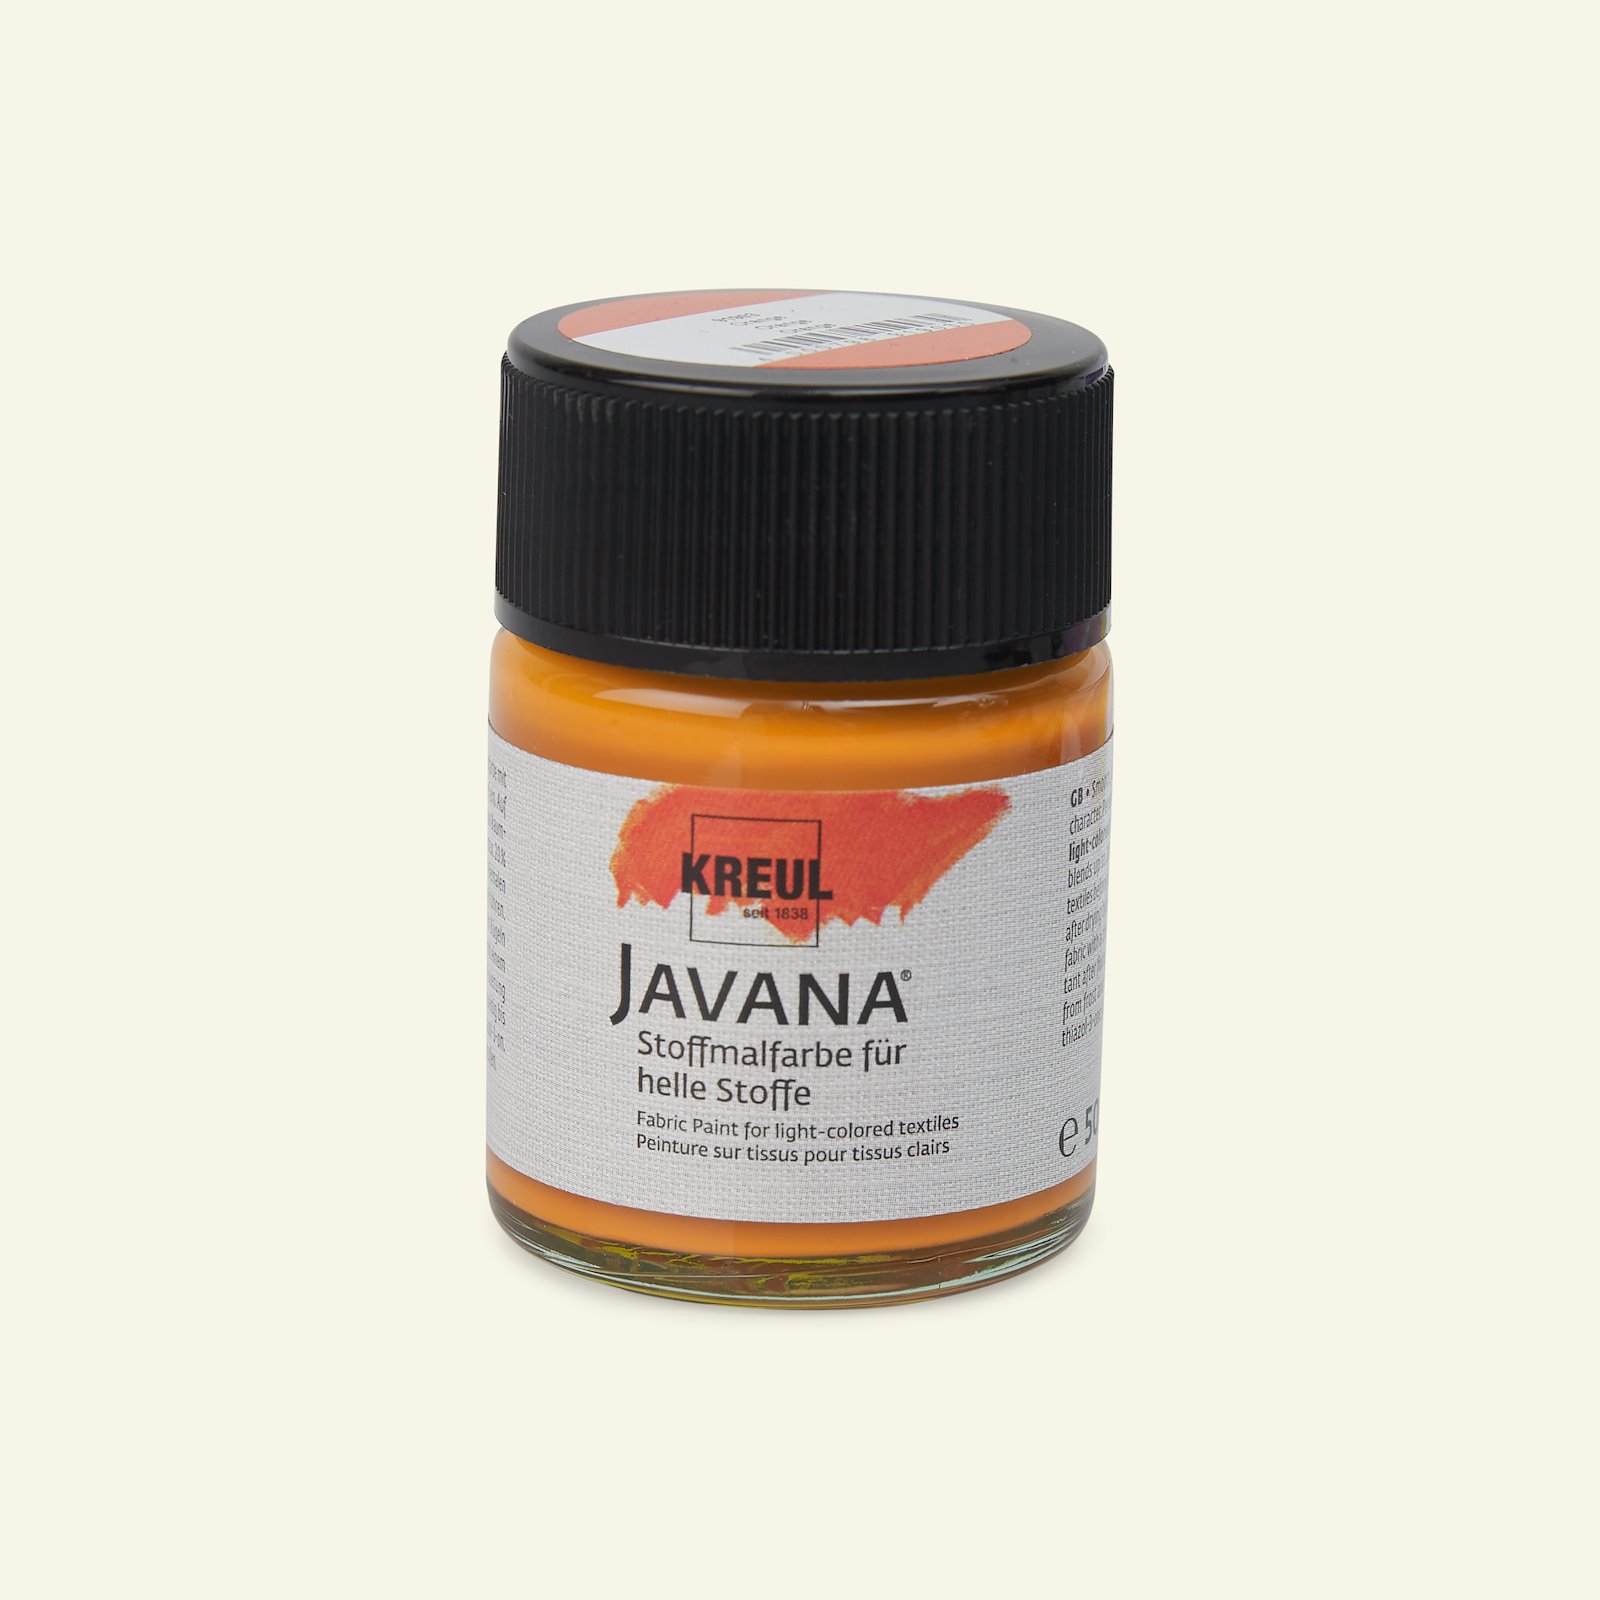 Javana textilfärg, orange, 50ml 29603_pack_b